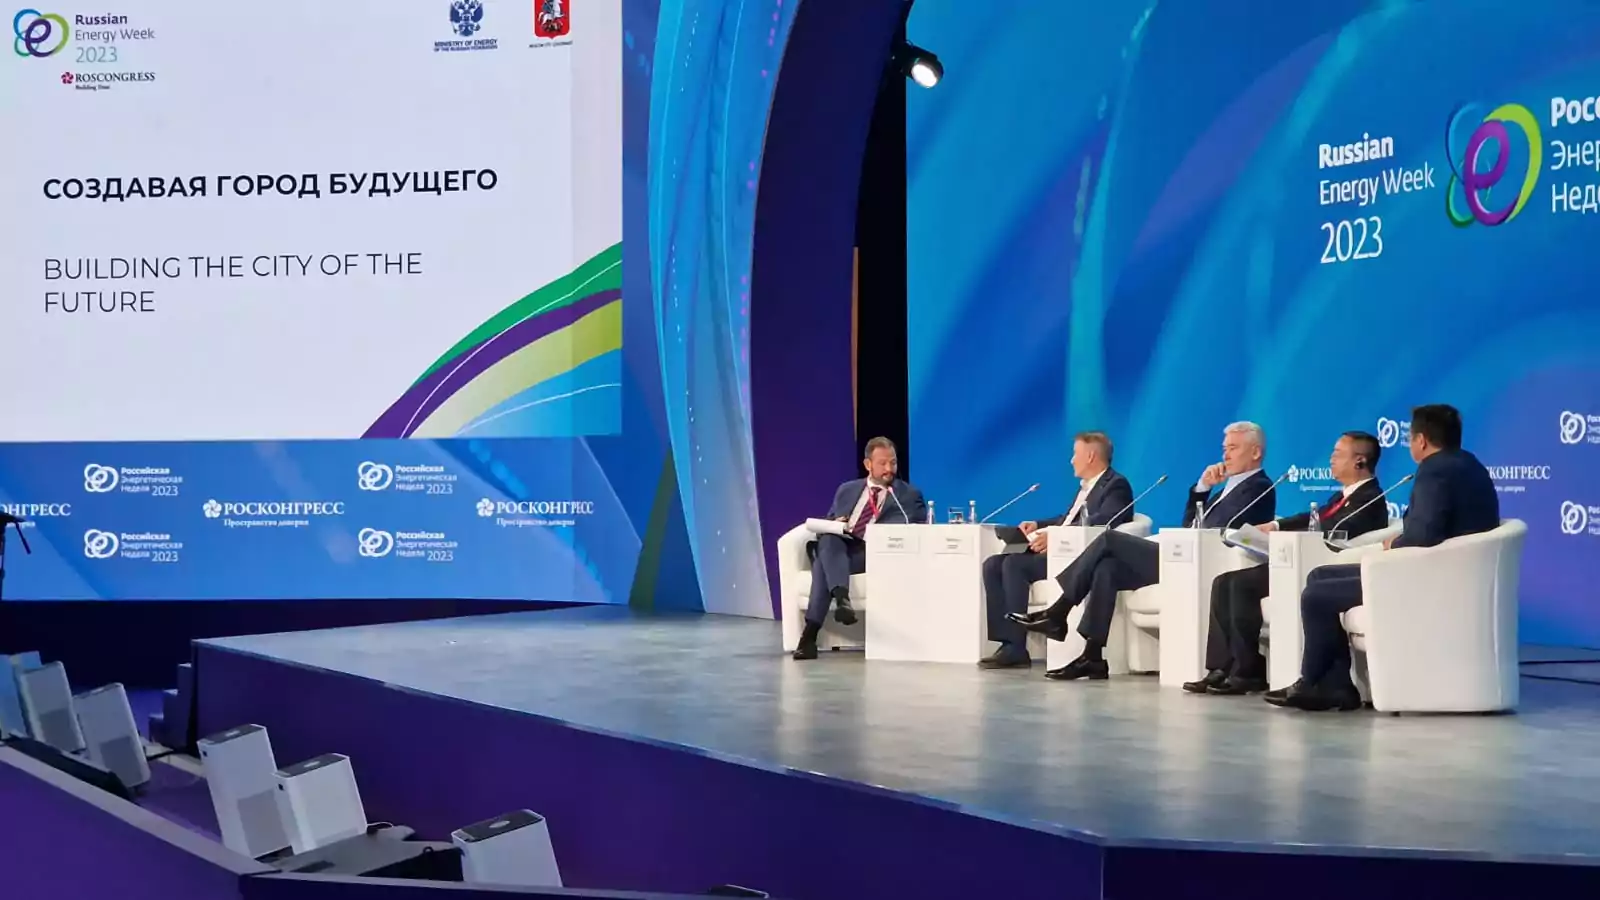 Подмосковный делоросс комментирует итоги РЭН-2023 и перспективы развития энергетической отрасли